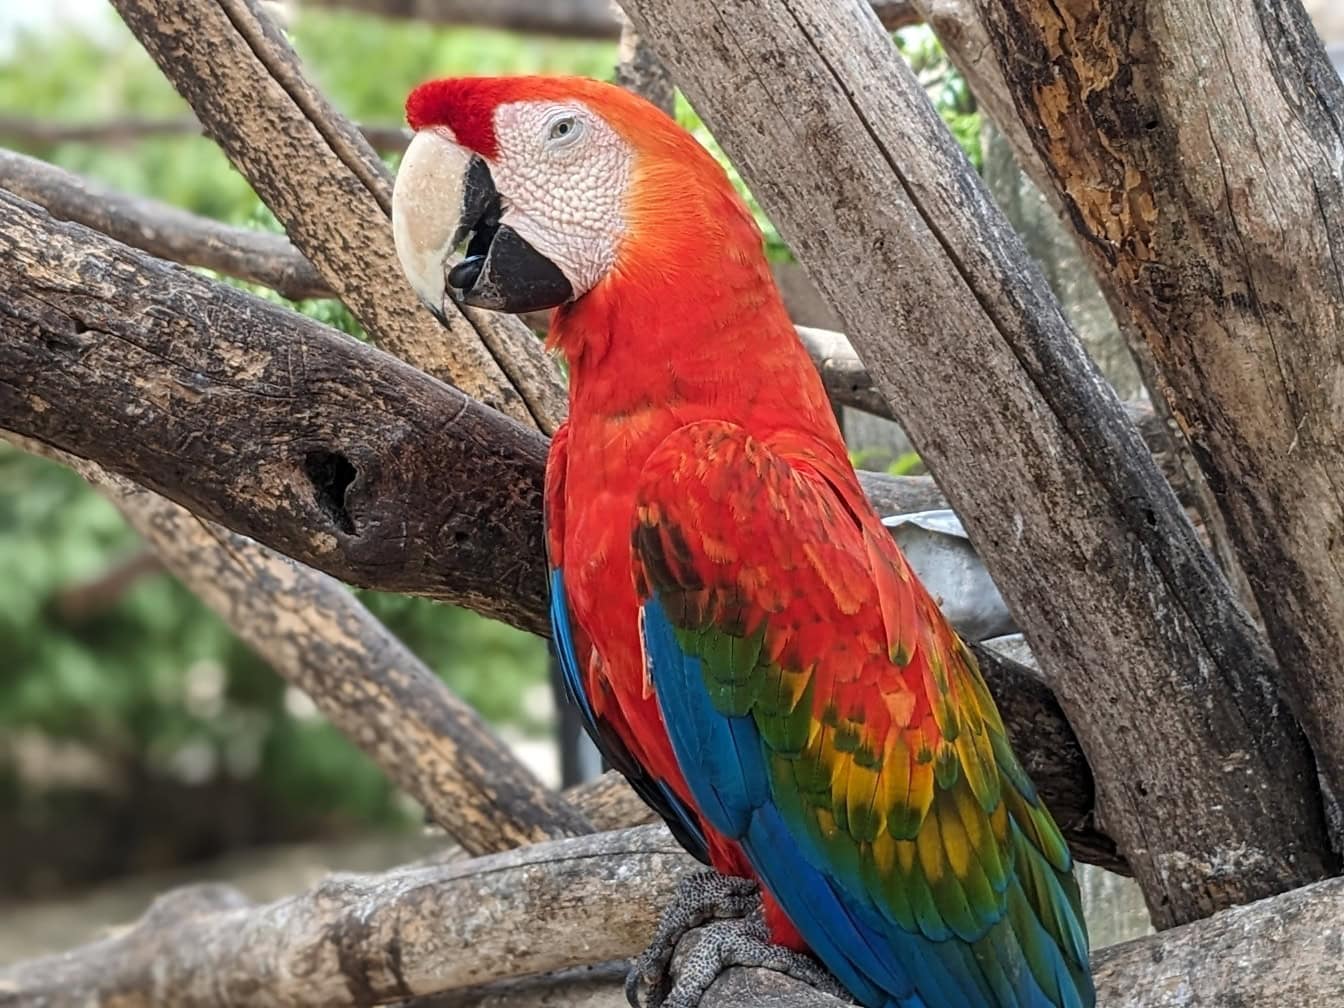 Szkarłatna papuga ara na gałęzi drzewa (Ara macao) dużą egzotyczną papugą neotropikalną pochodzącą z lasów deszczowych obu Ameryk